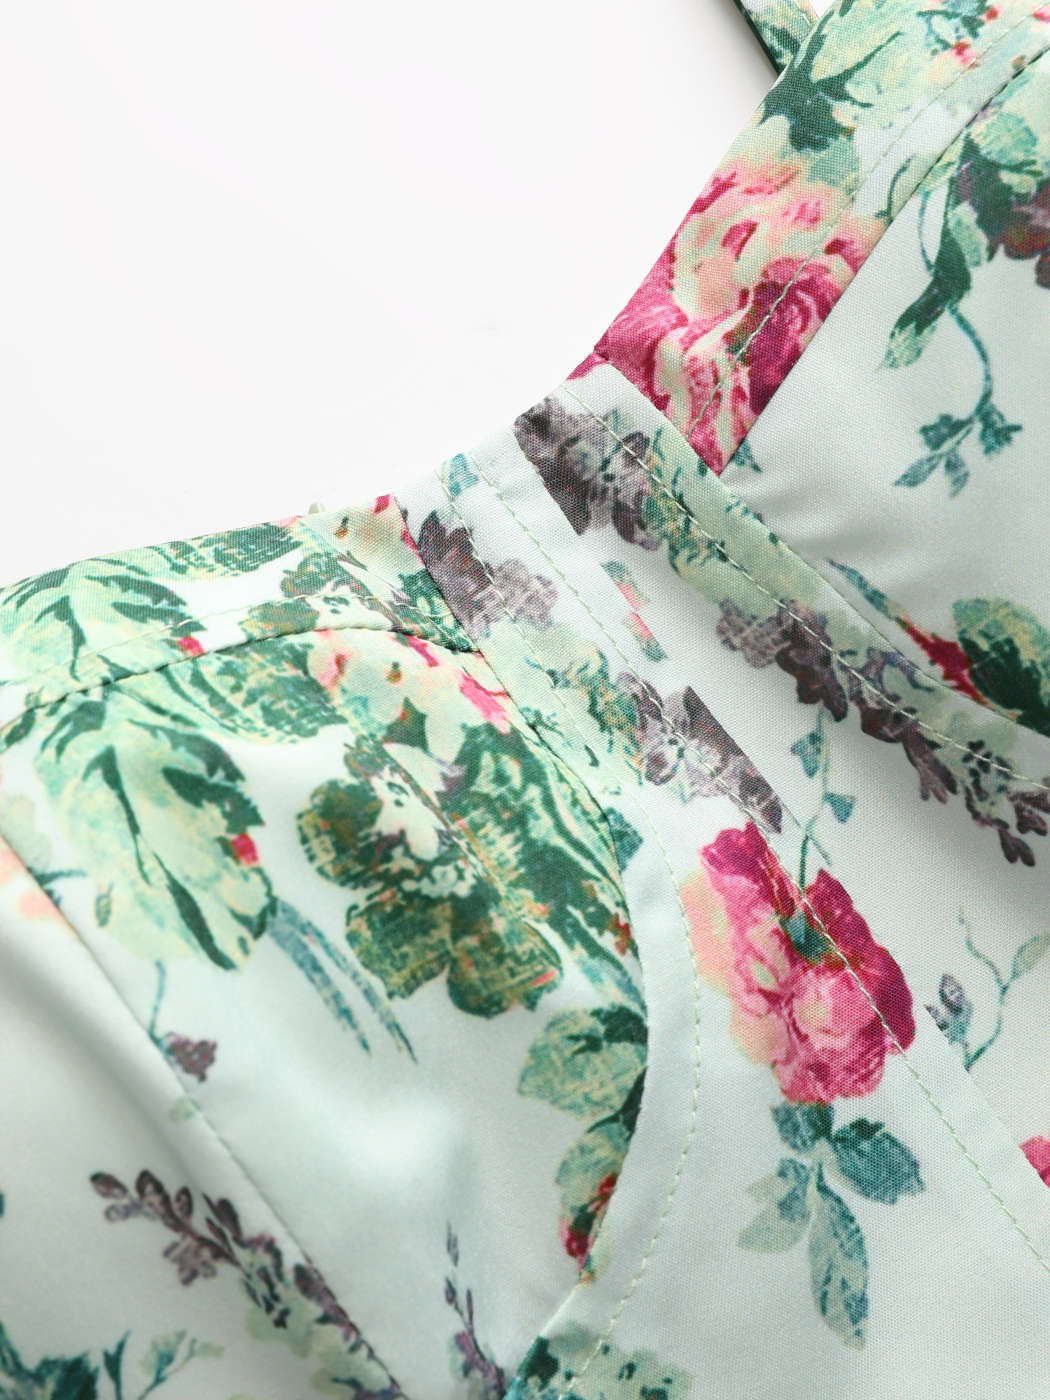 Zara Floral Corset Dress Size XS